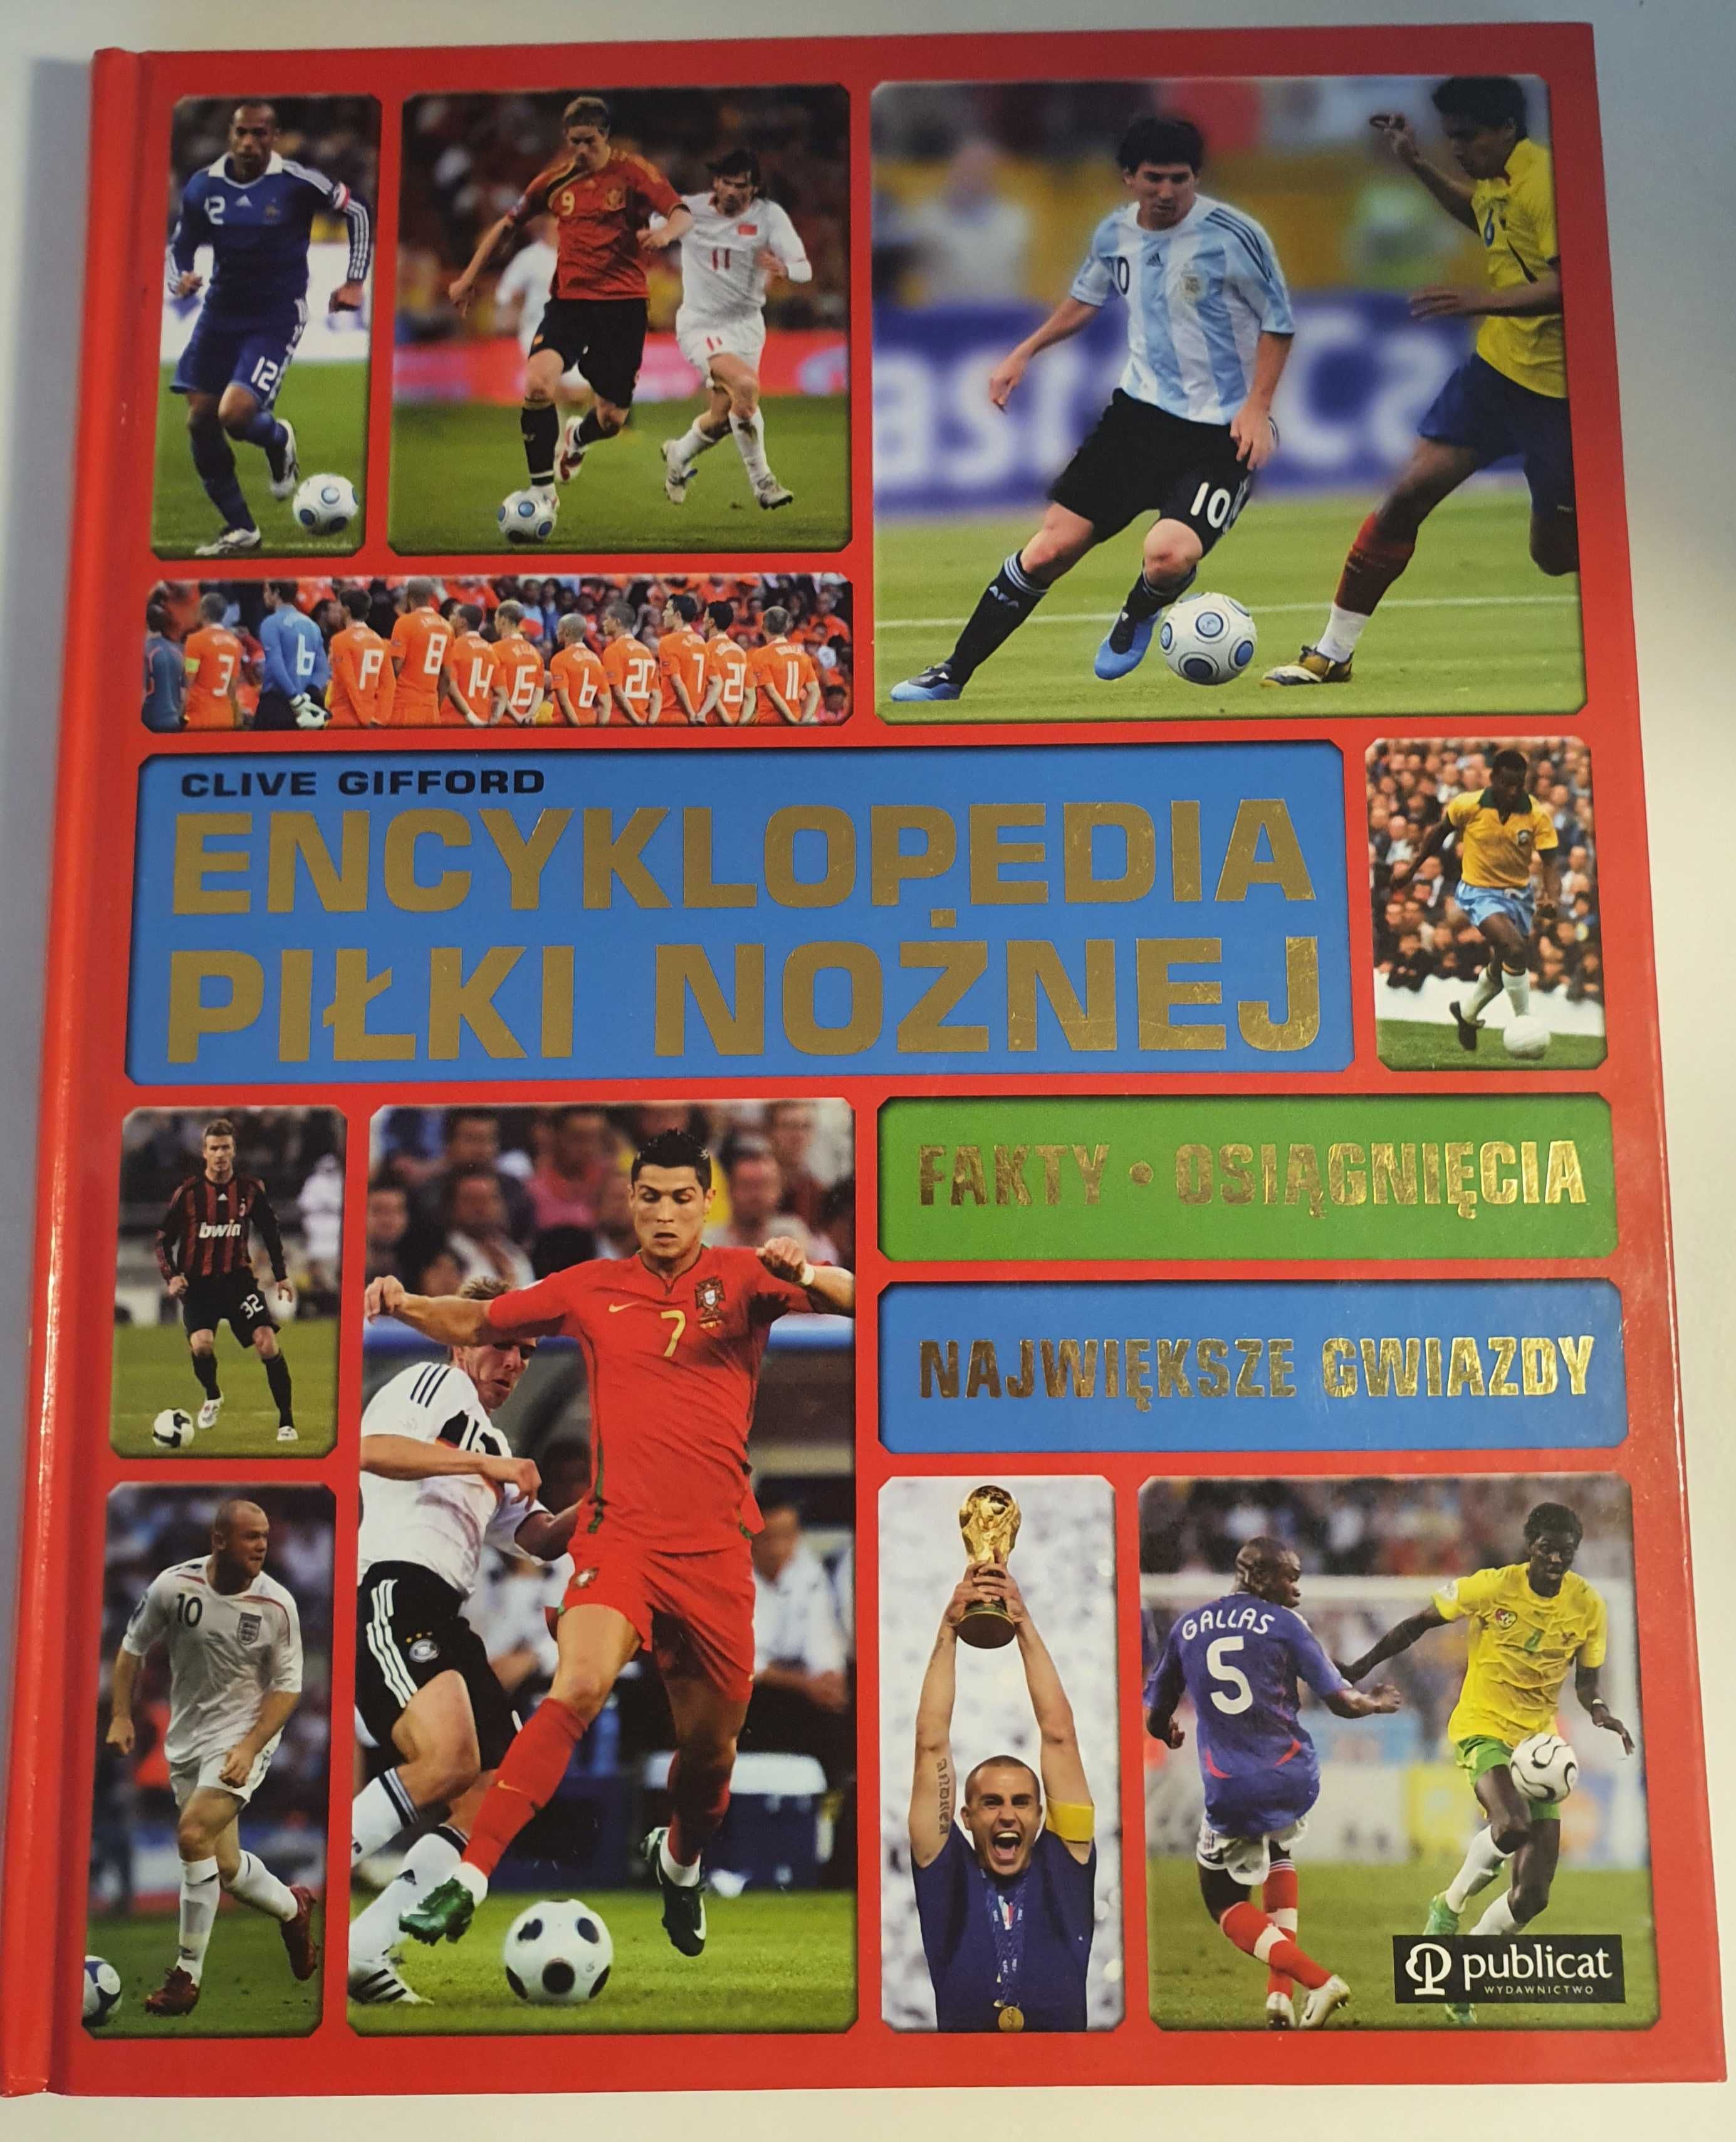 Encyklopedia piłki nożnej, autor Clive Gifford.